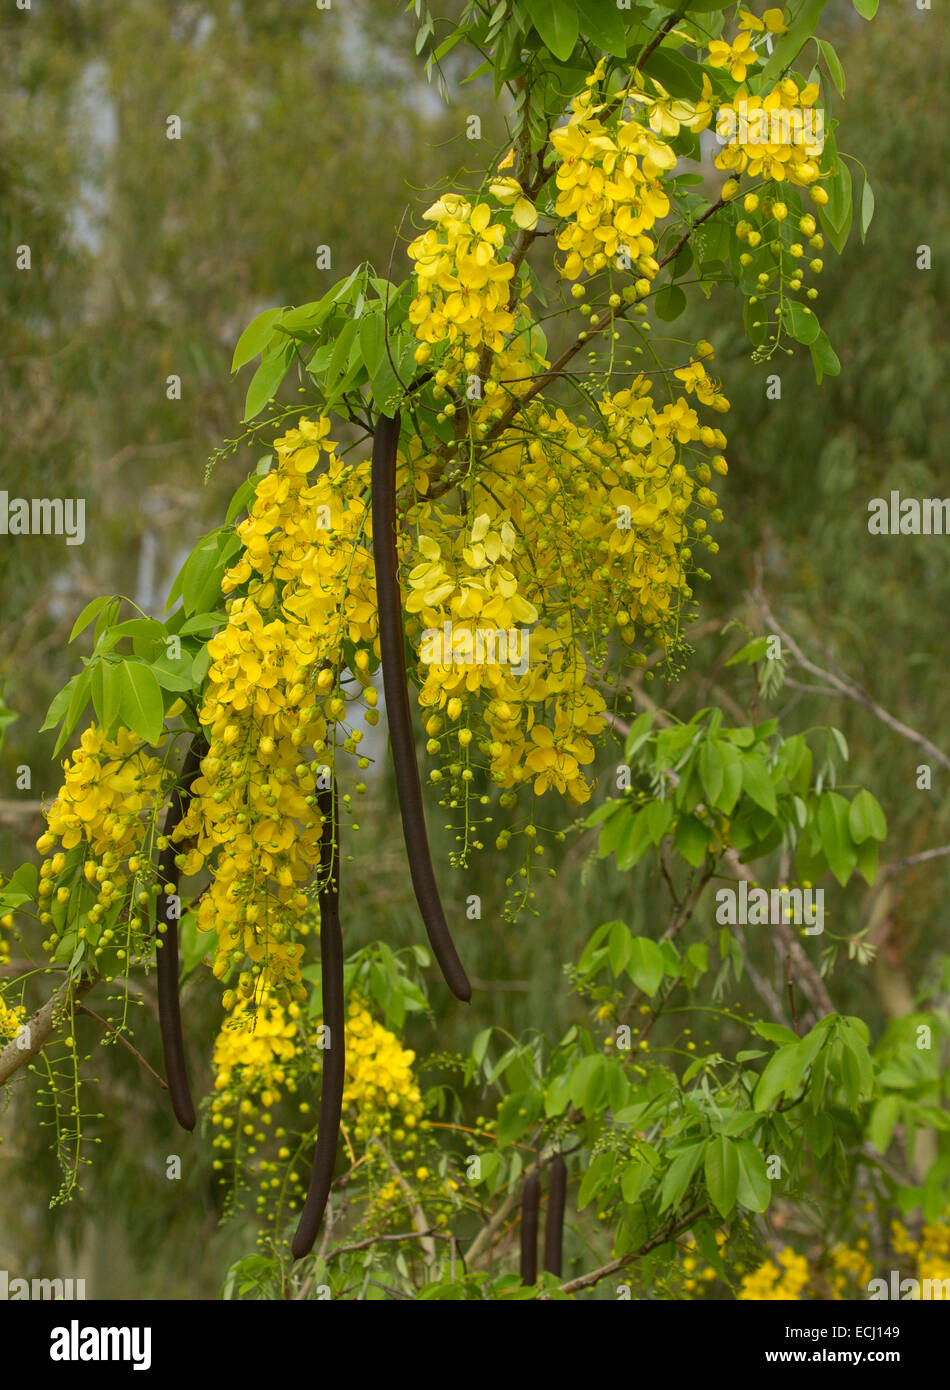 Langen Rispen von gelben Blüten, lange Samenkapseln & grünen Blättern von Cassia Fistula, Golden Shower Tree, Blumenemblem von Thailand Stockfoto